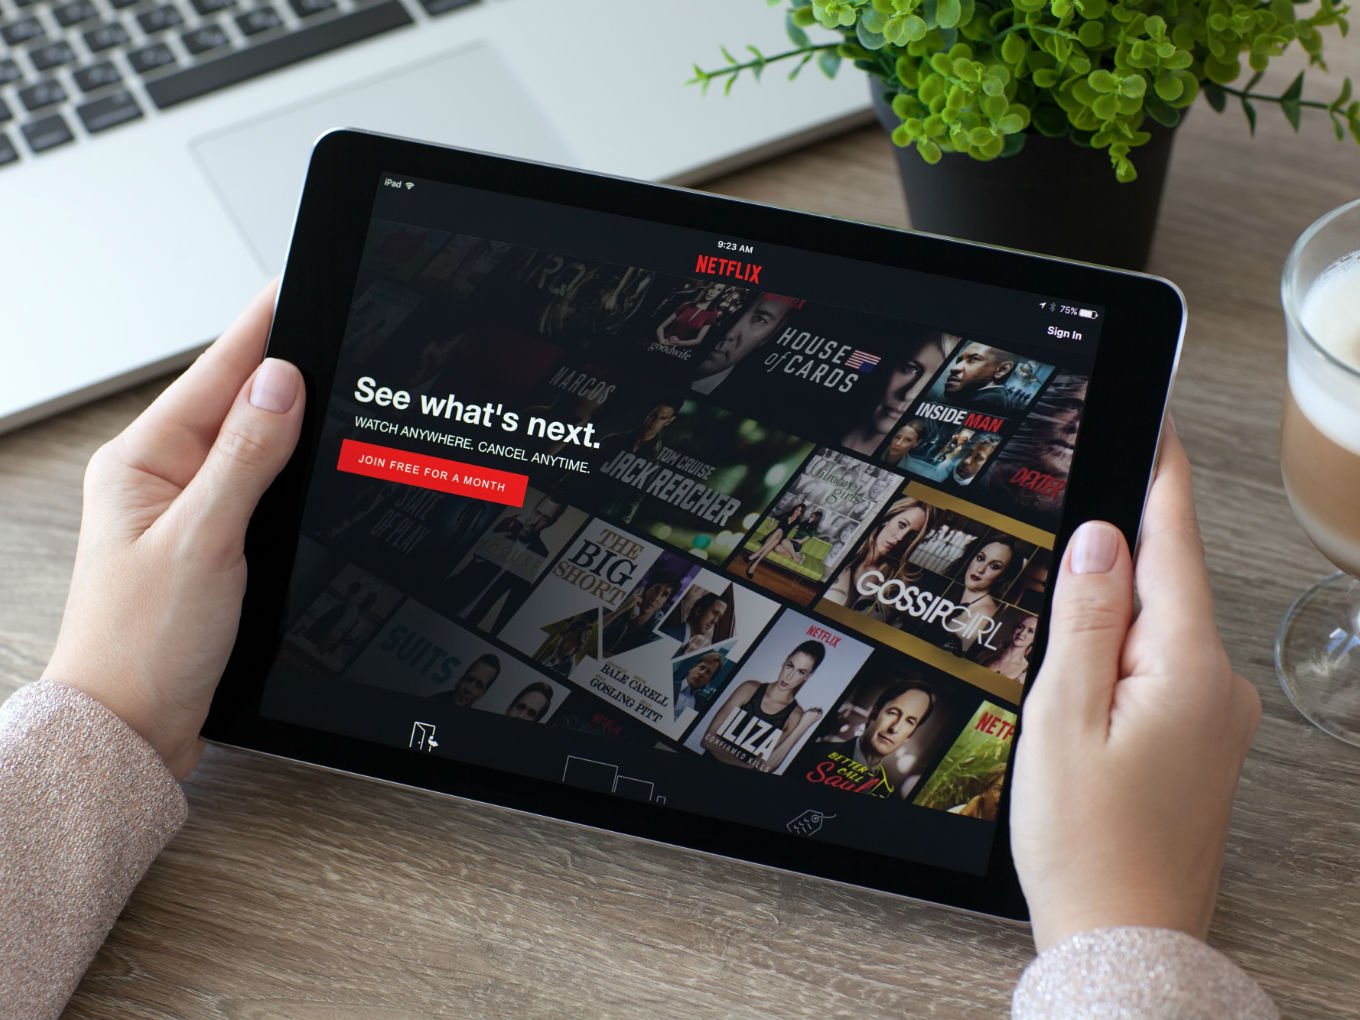 Original Content In India Driving New Subscriptions, Netflix Tells Investors